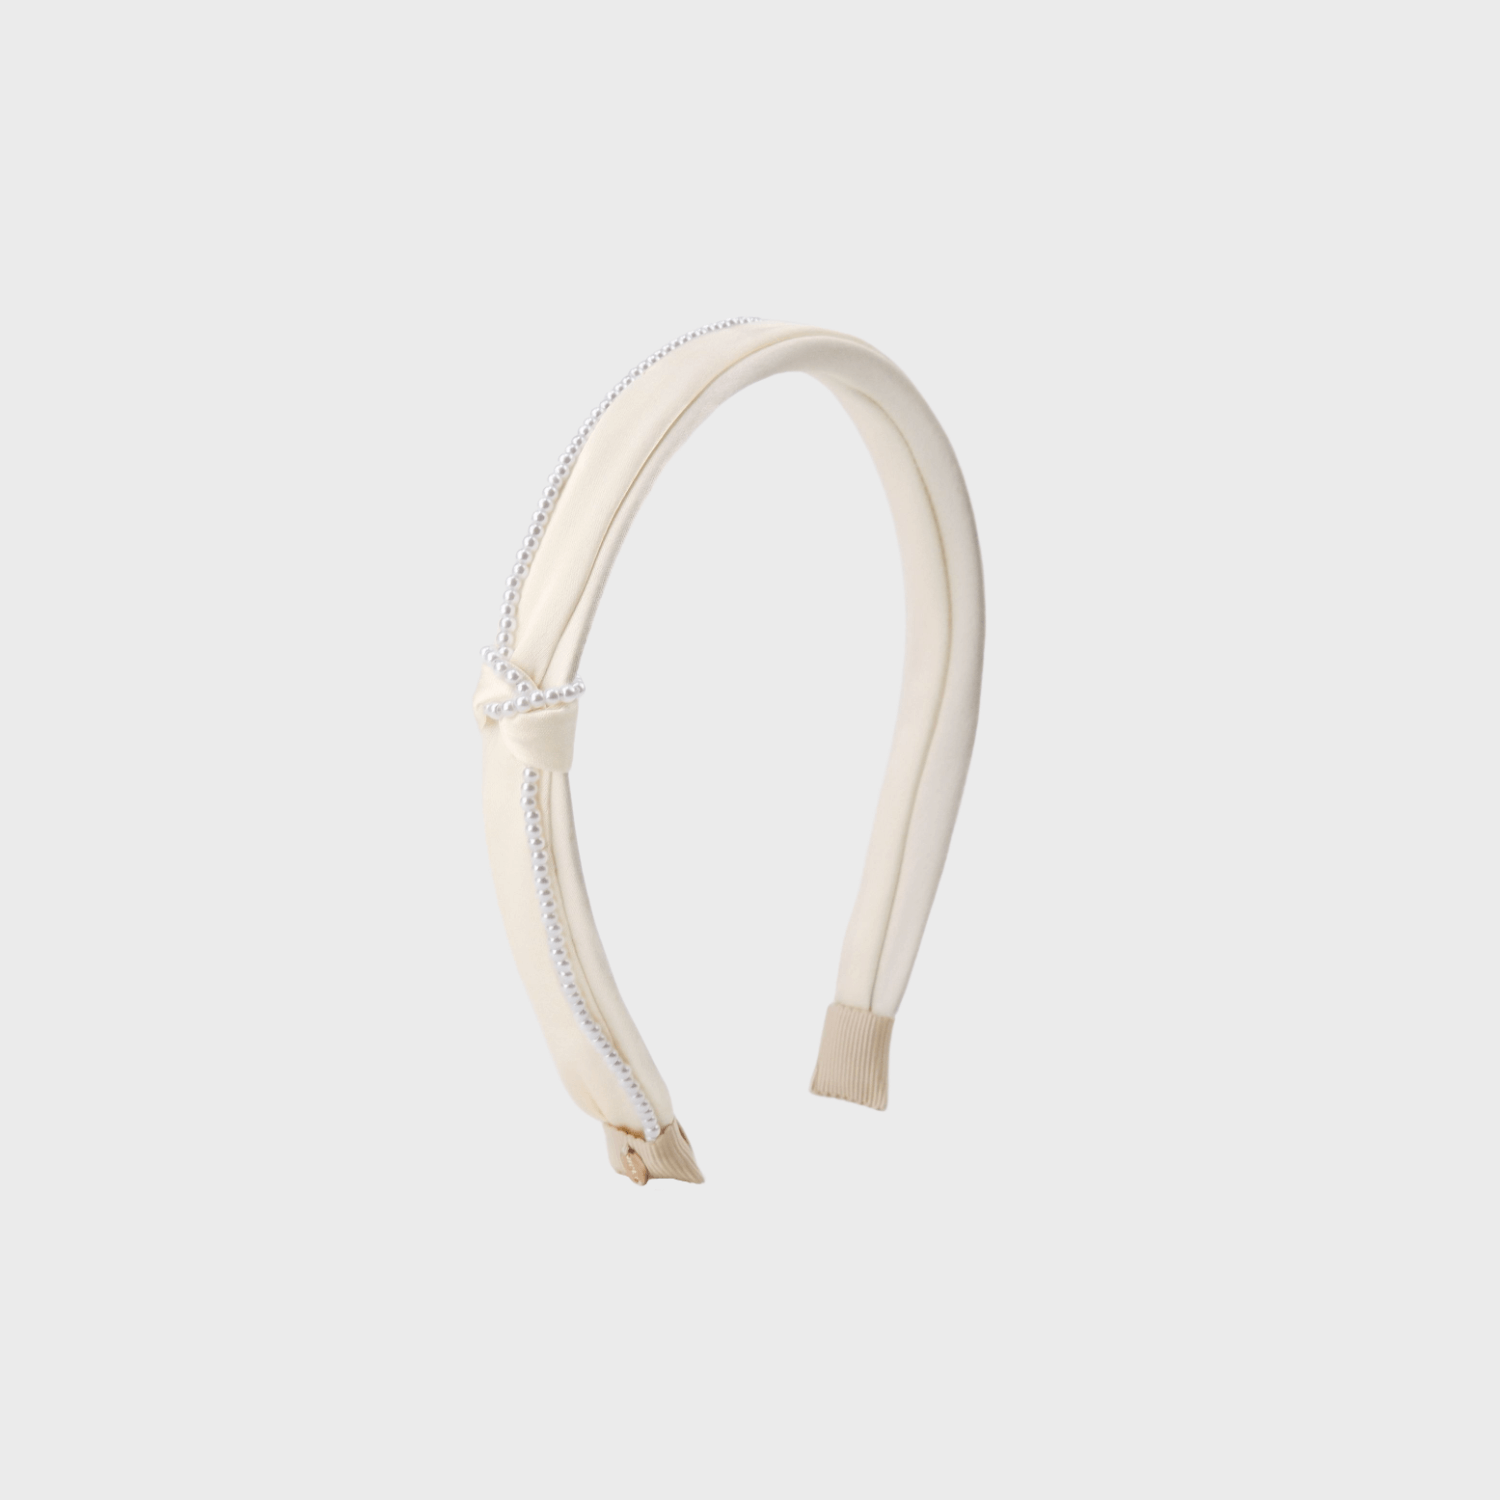 Satin Pearl Thin Headband (1 Knot & 1 Strand)